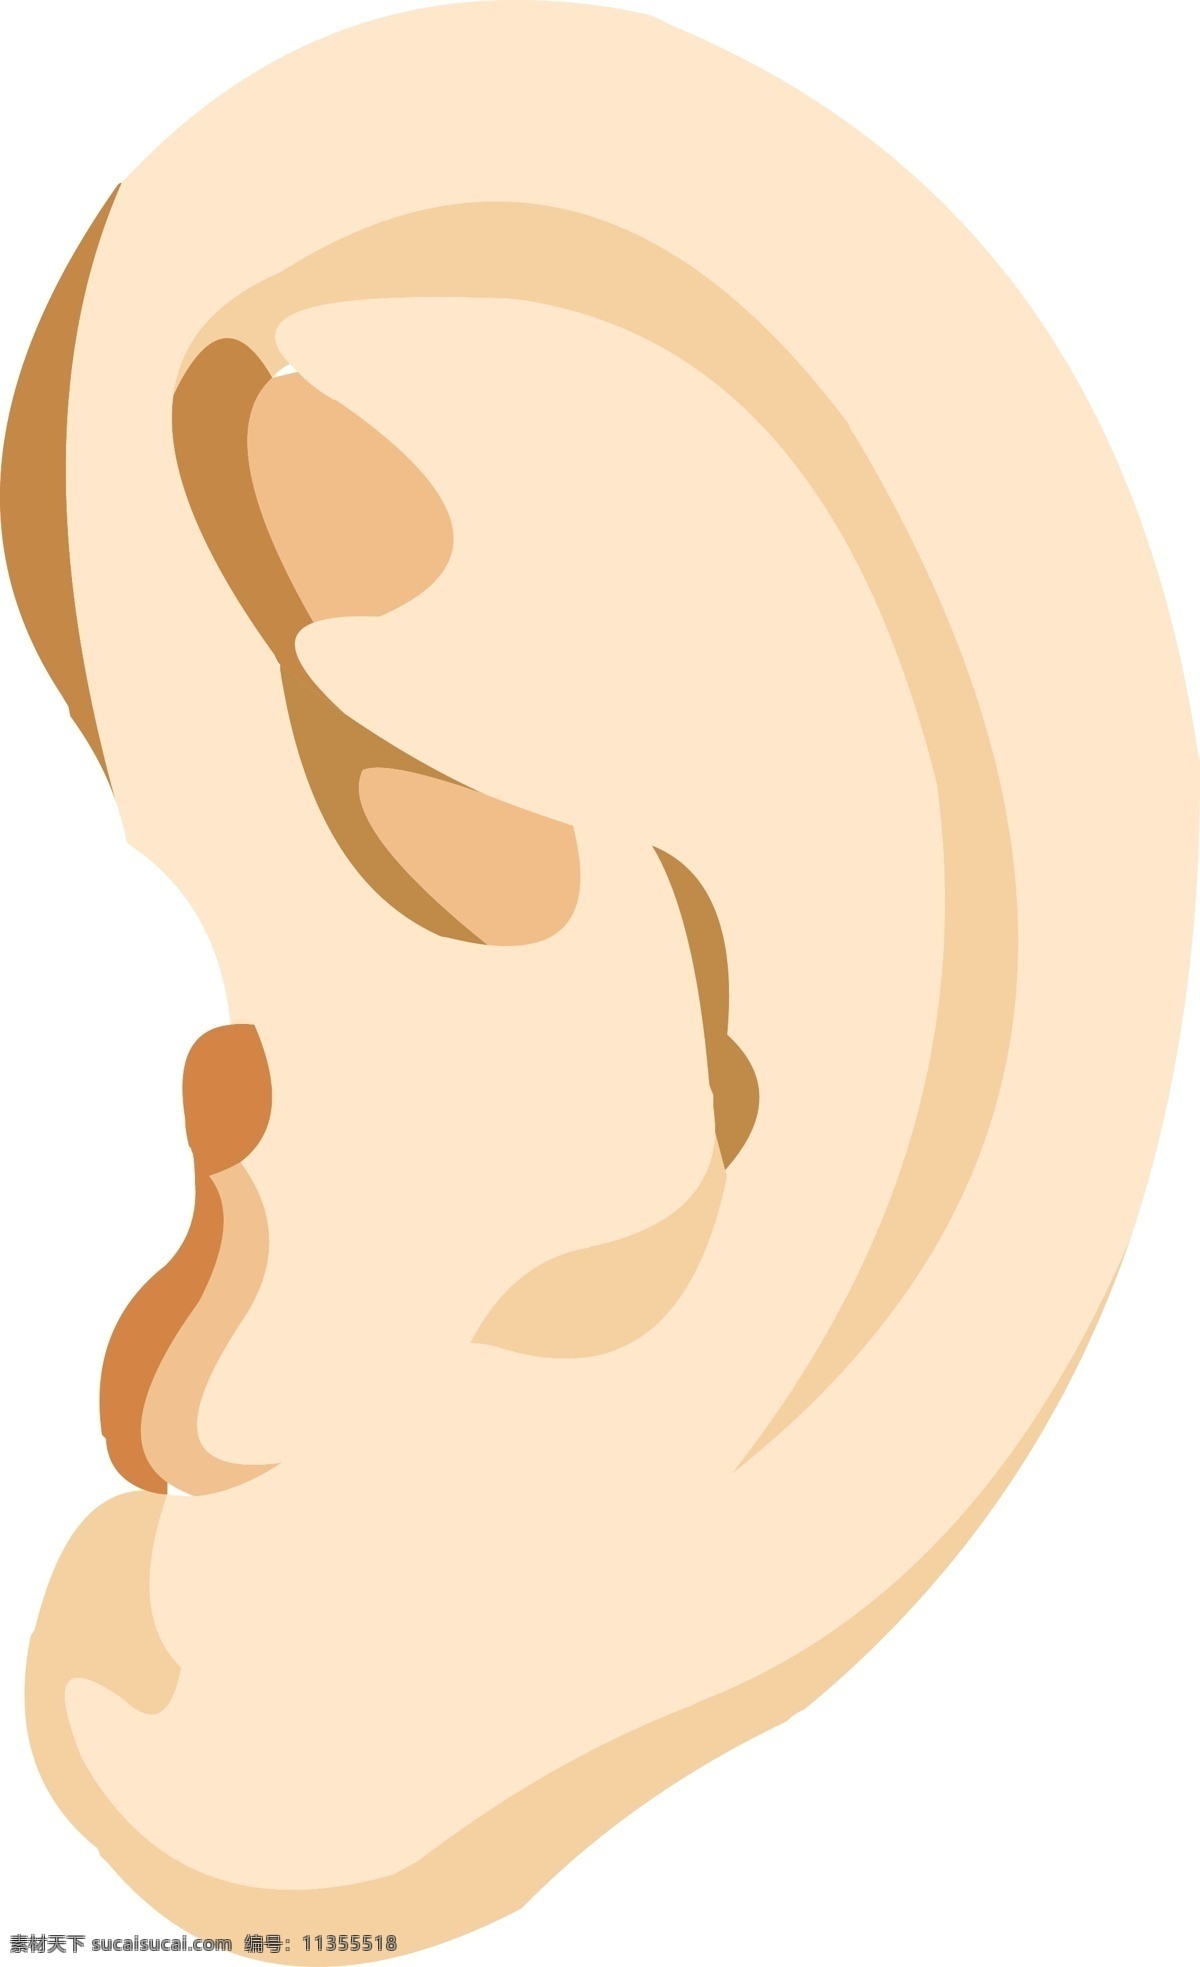 手绘 器官 人体 五官 耳朵 结构 耳朵结构 器官结构 手绘器官 人体器官 矢量器官 器官图 眼耳口鼻 脏器 卡通器官